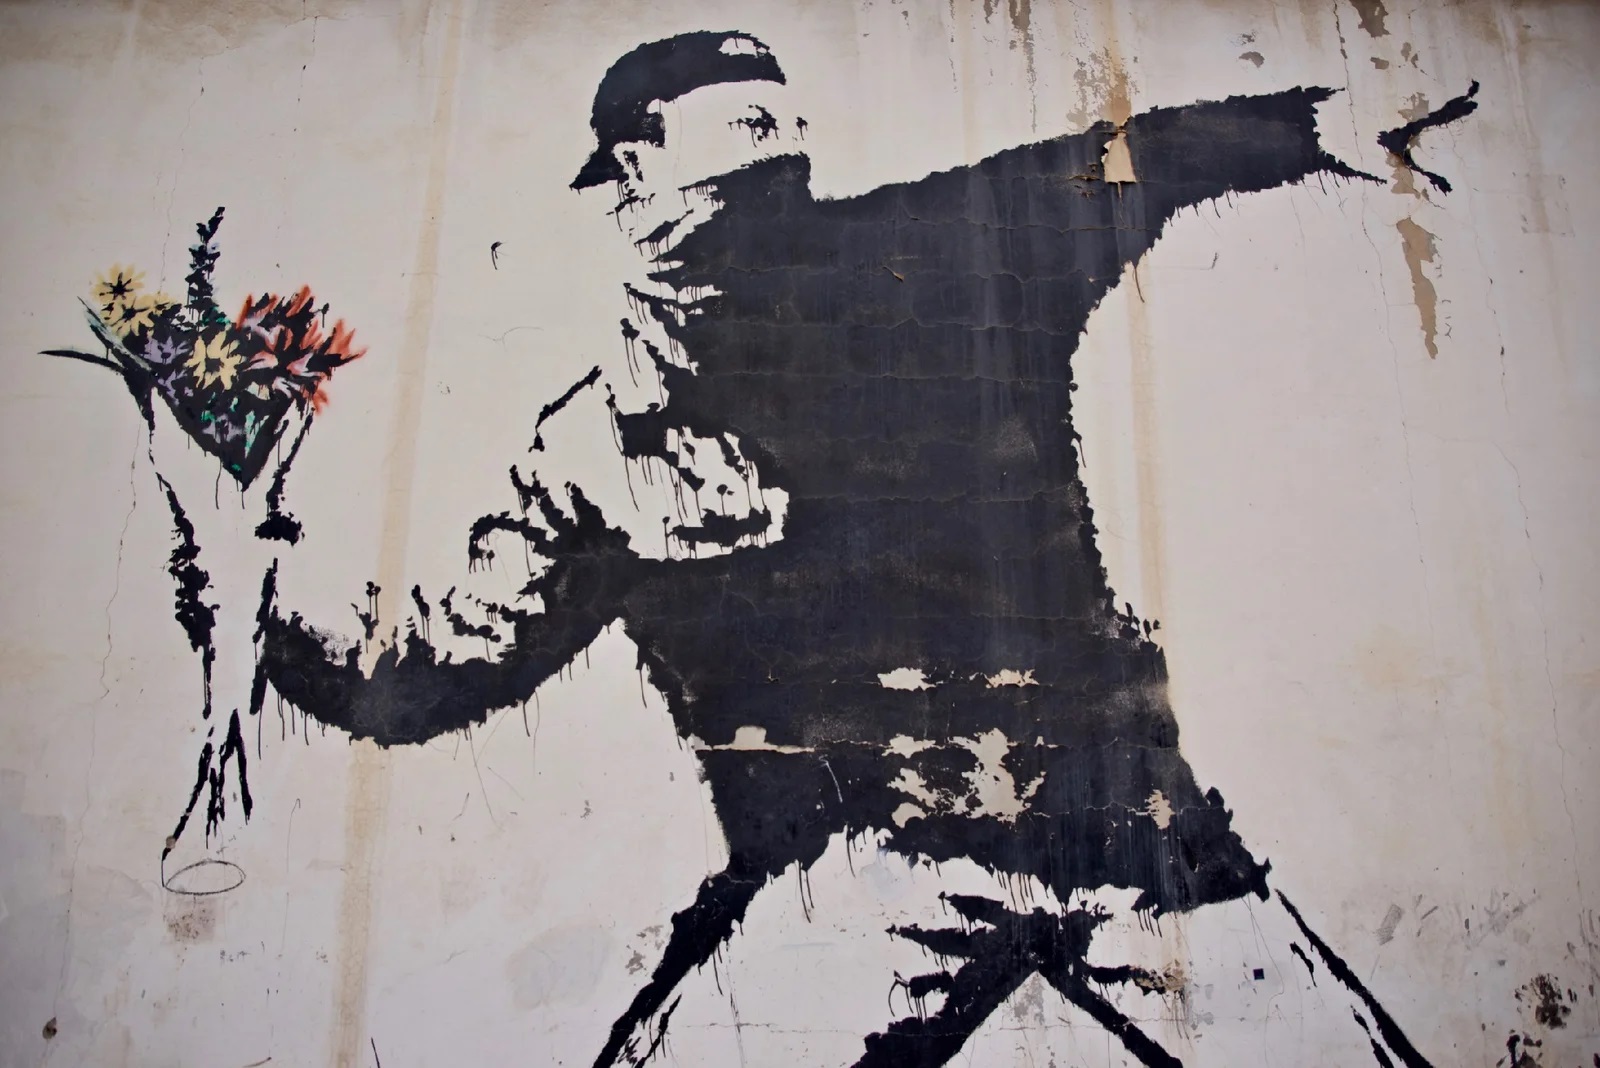 L’anonimato di Banksy, un paradosso nell’era della visibilità globale